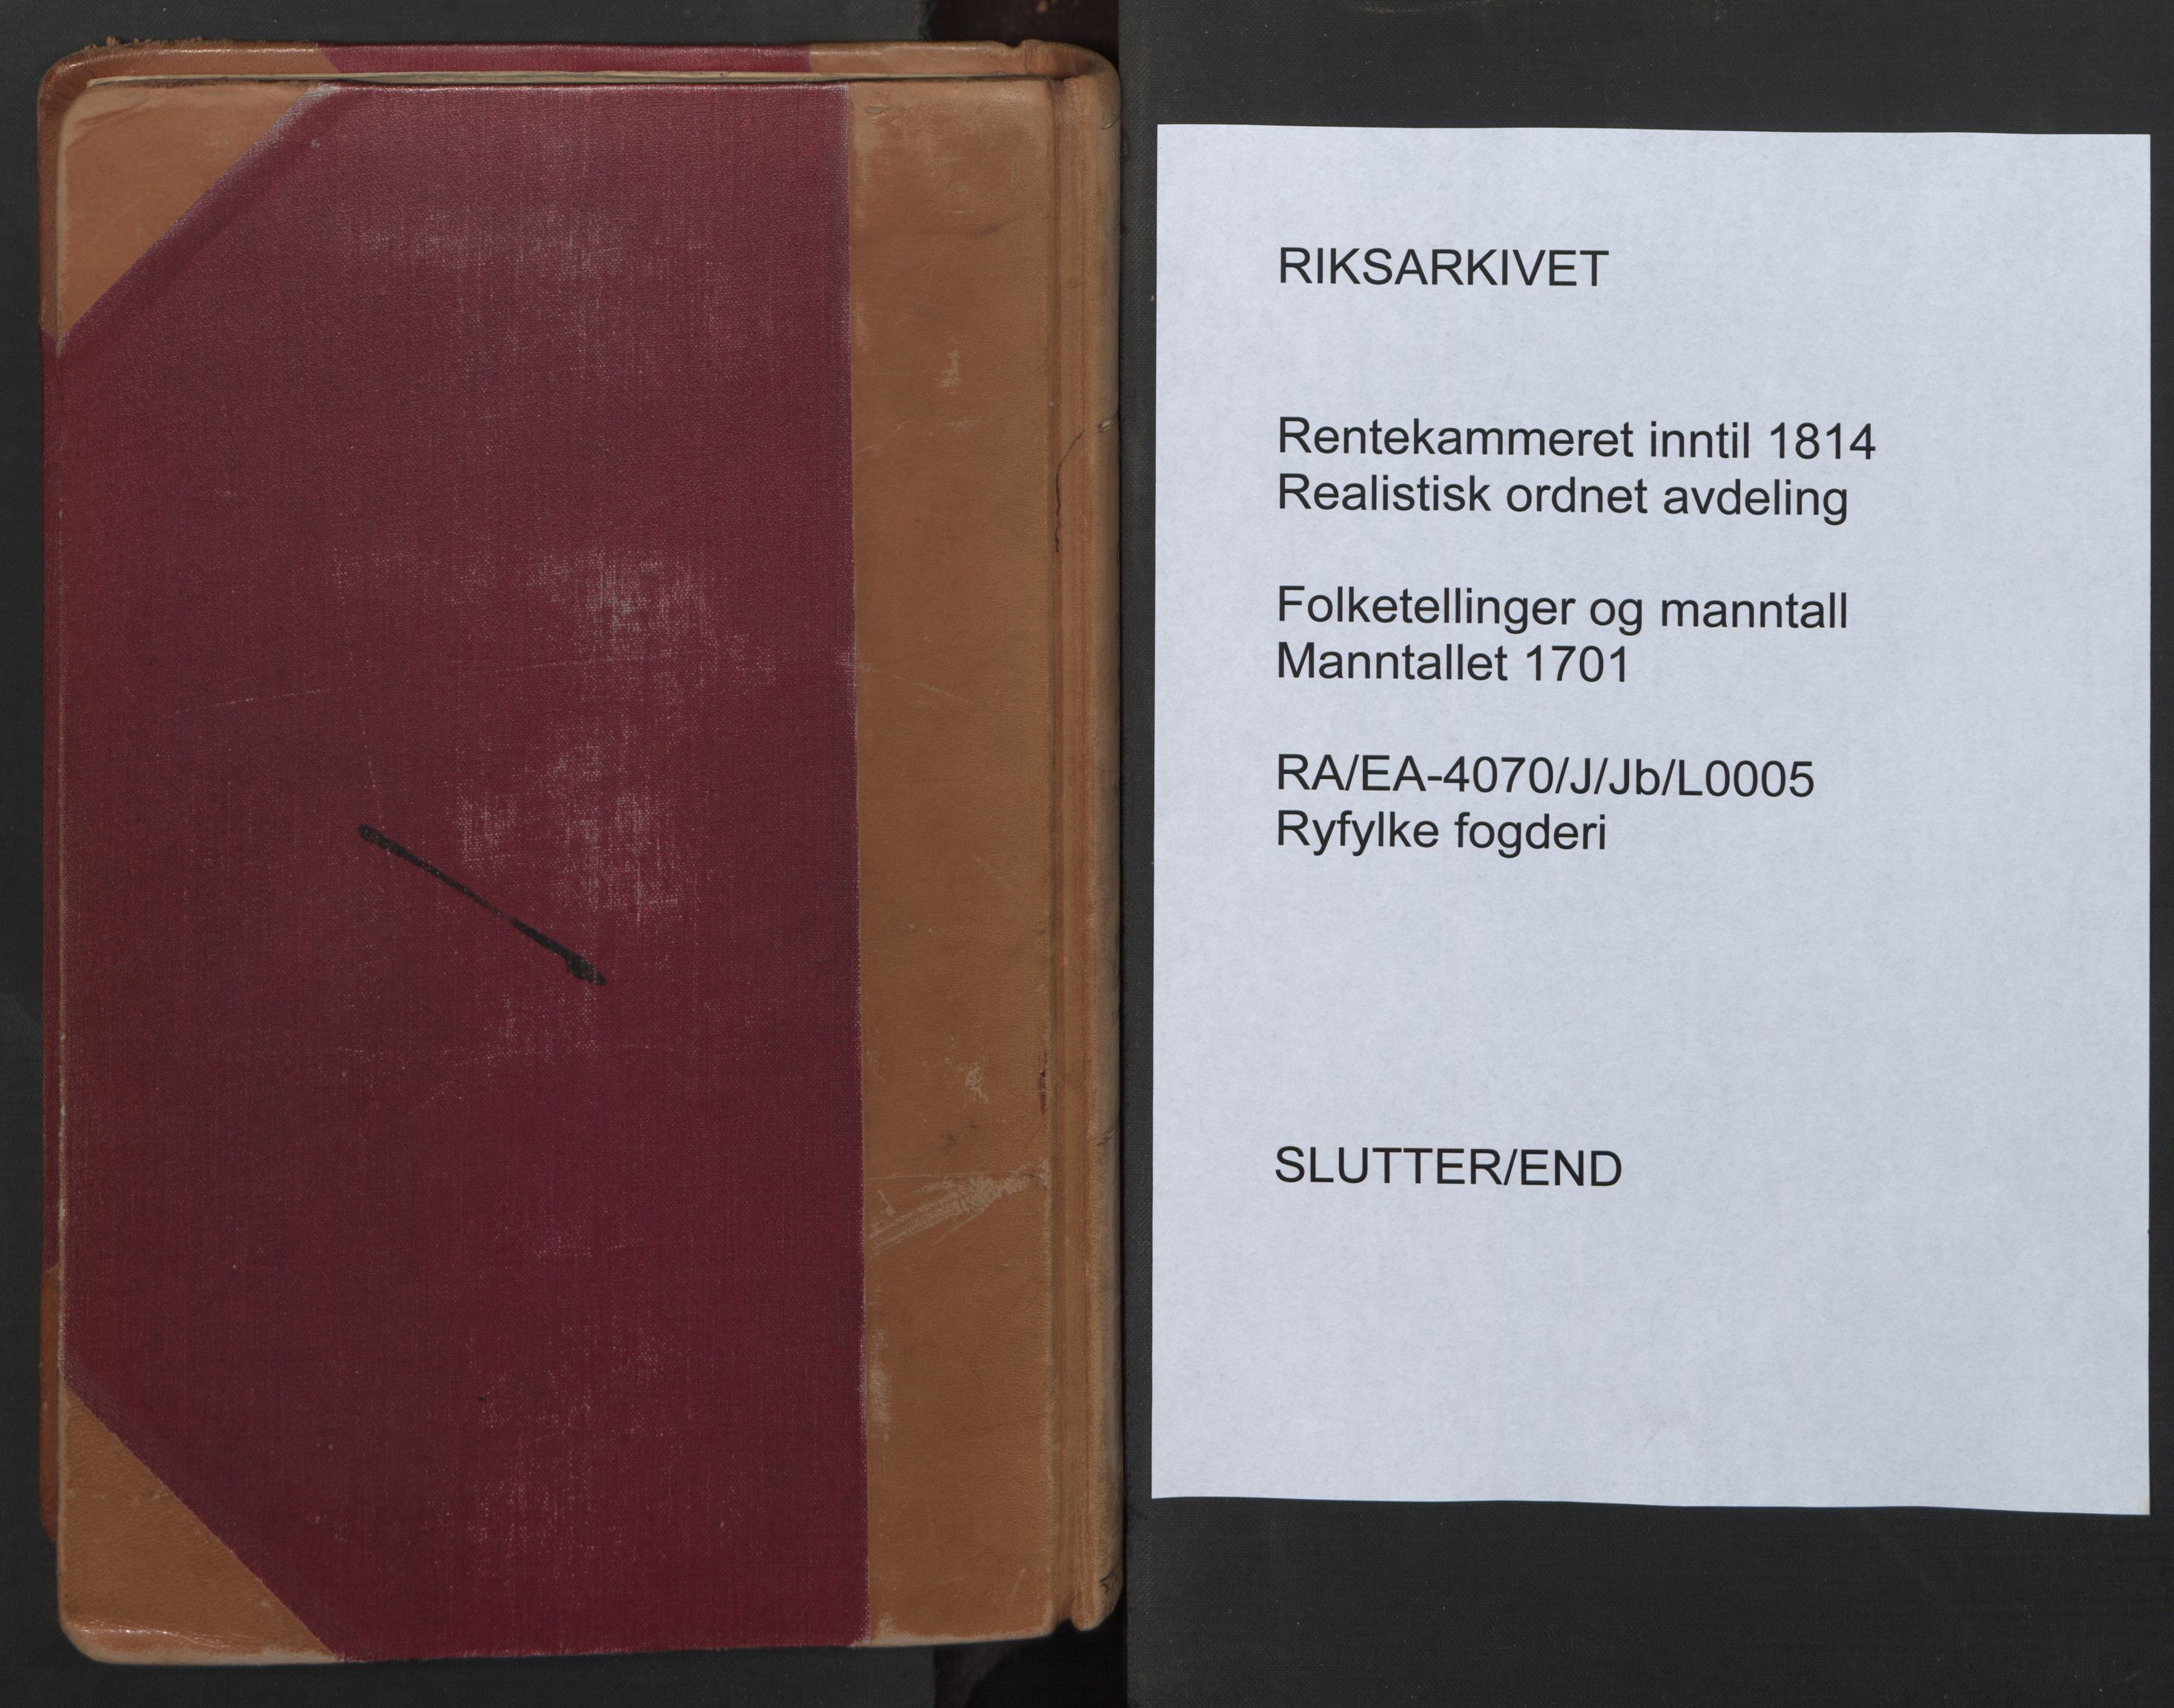 RA, Census (manntall) 1701, no. 5: Ryfylke fogderi, 1701